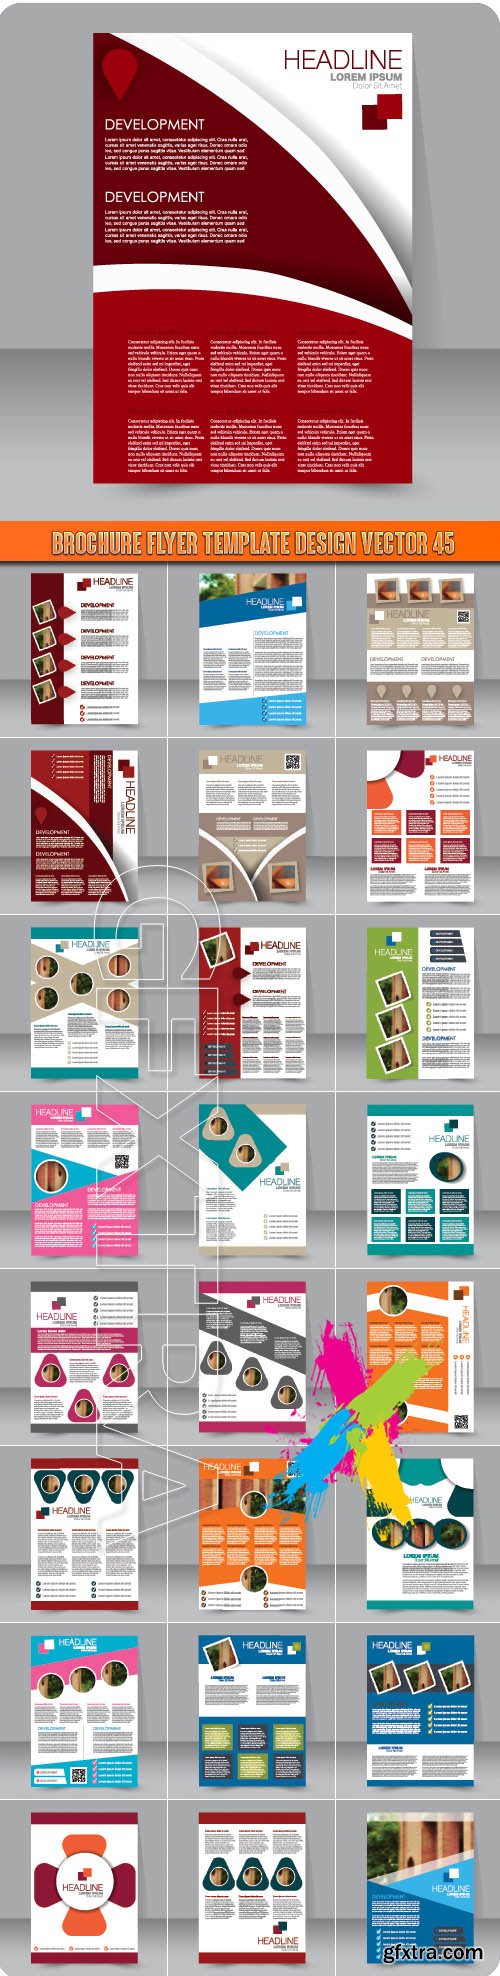 Brochure flyer template design vector 45